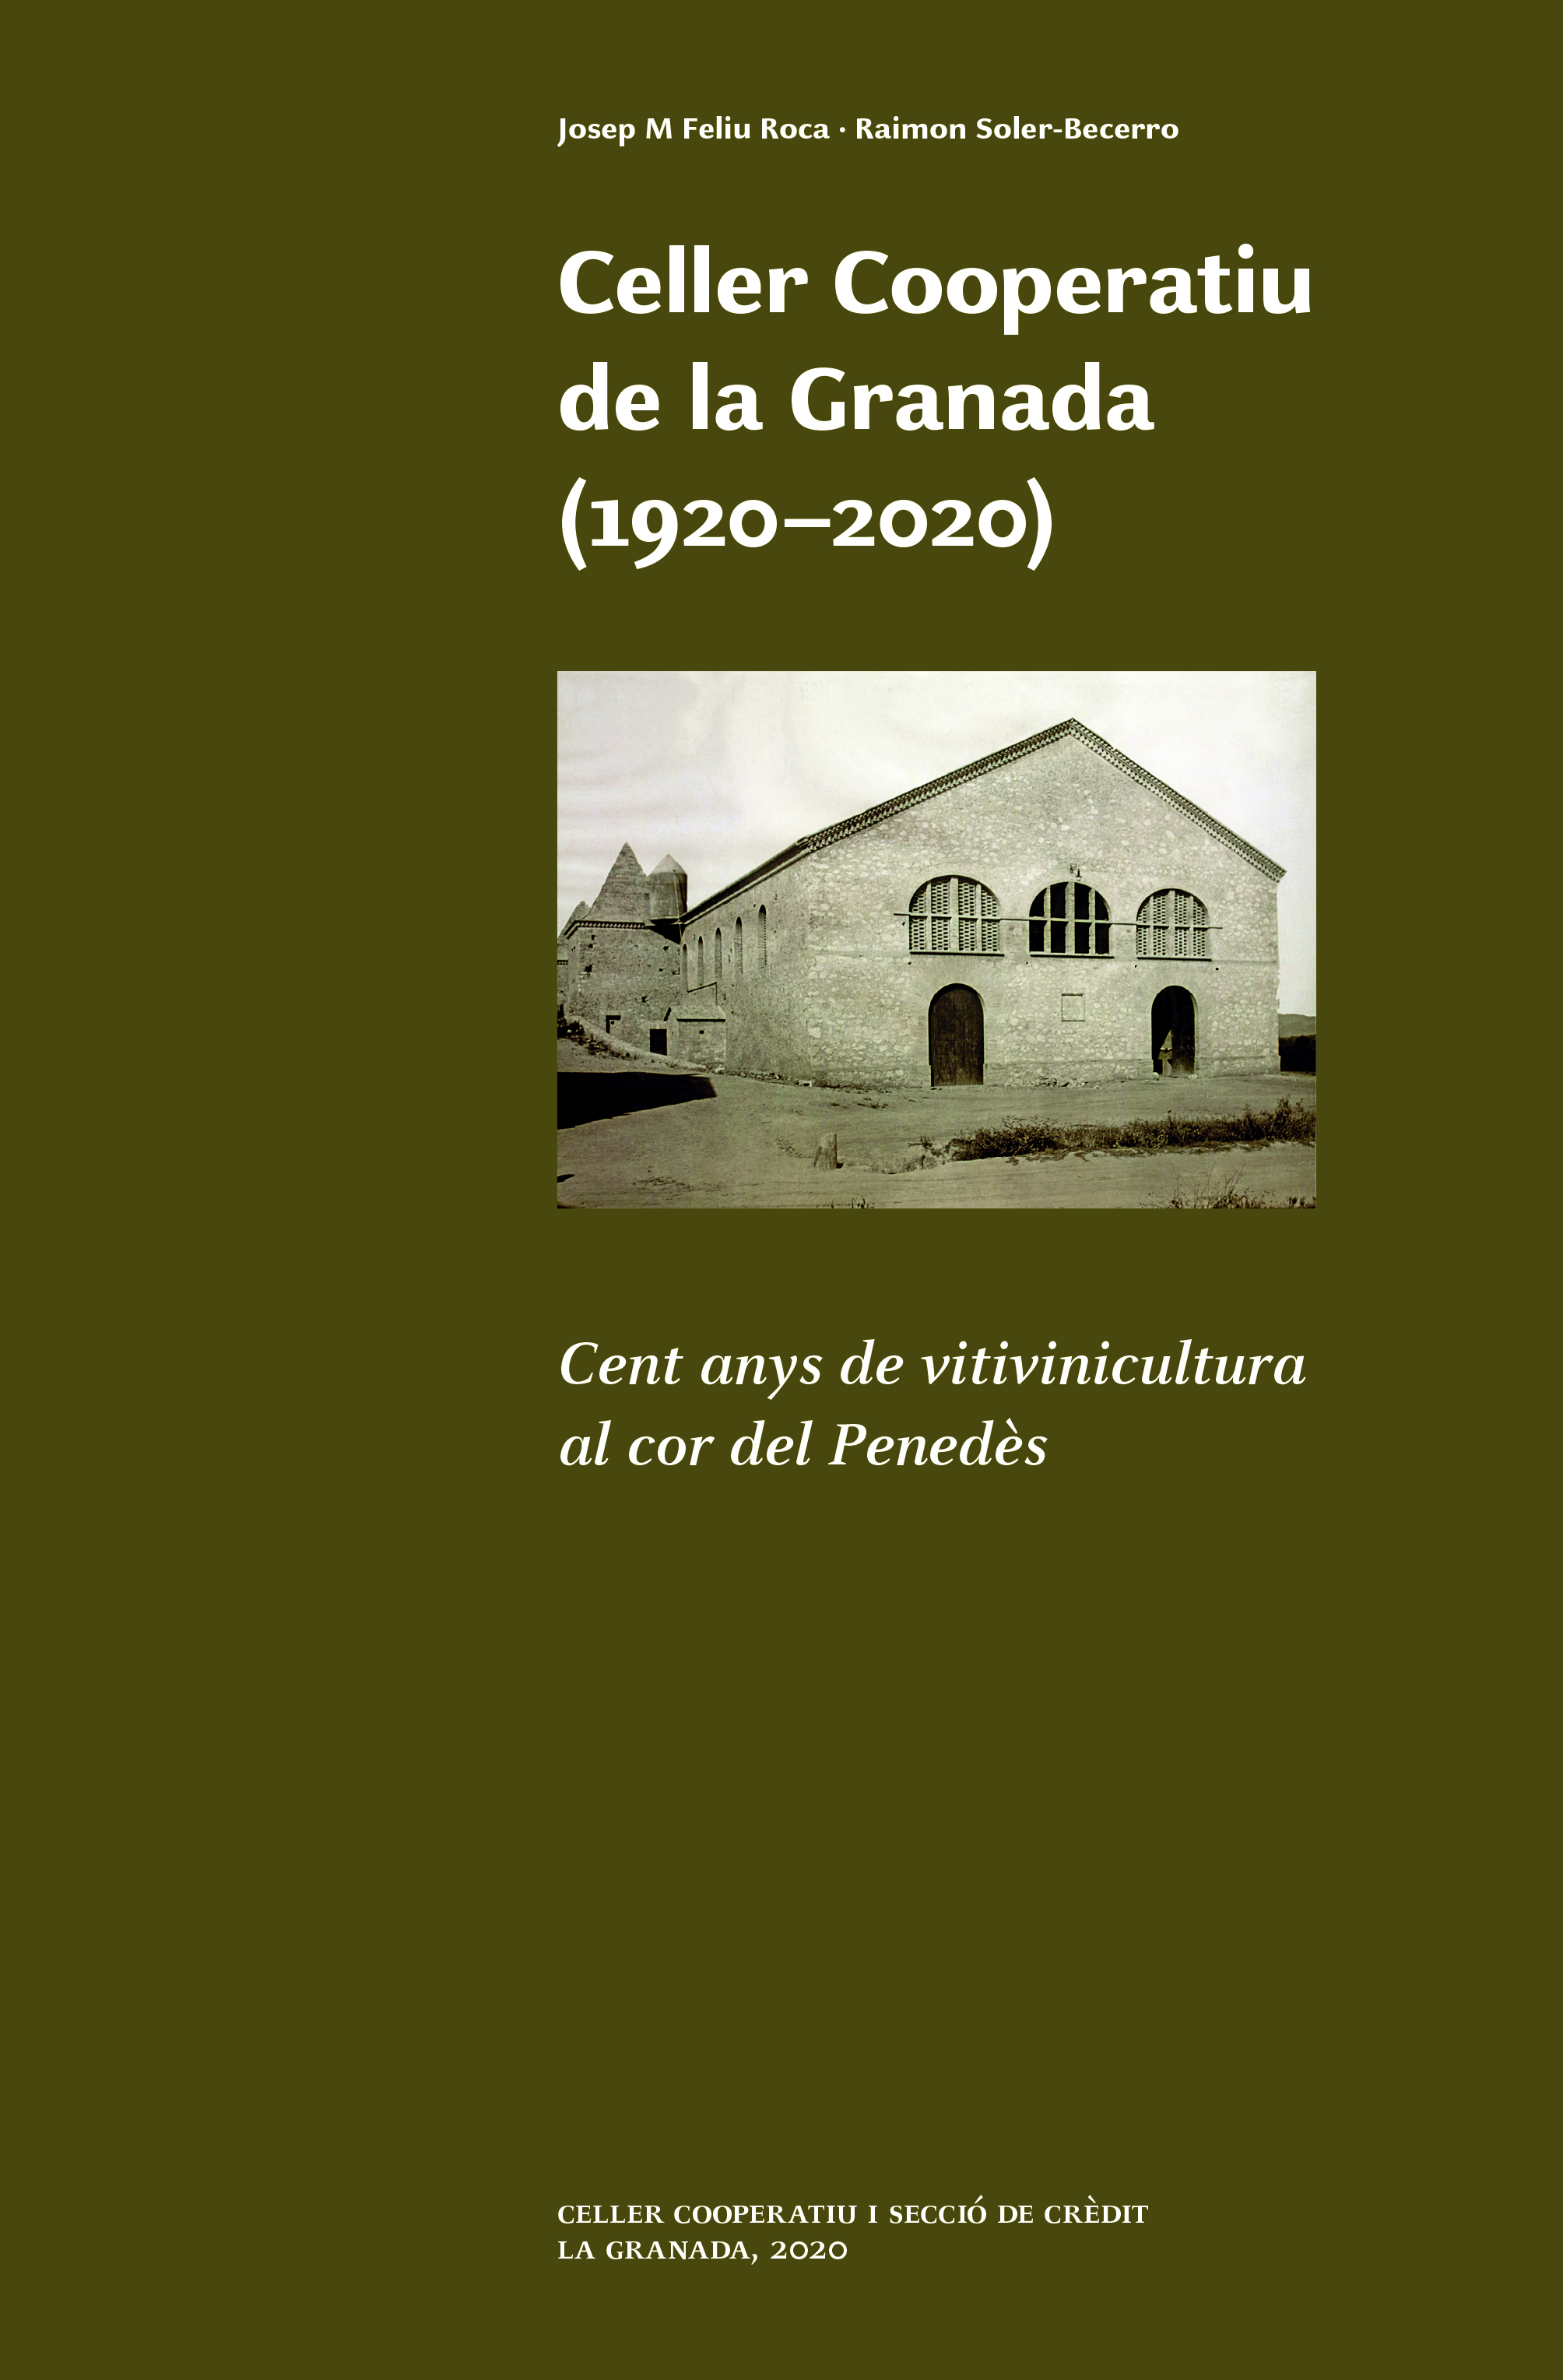 Celler Cooperatiu de la Granada (1920-2020). Cent anys de vitivinicultura al cor del Penedès.